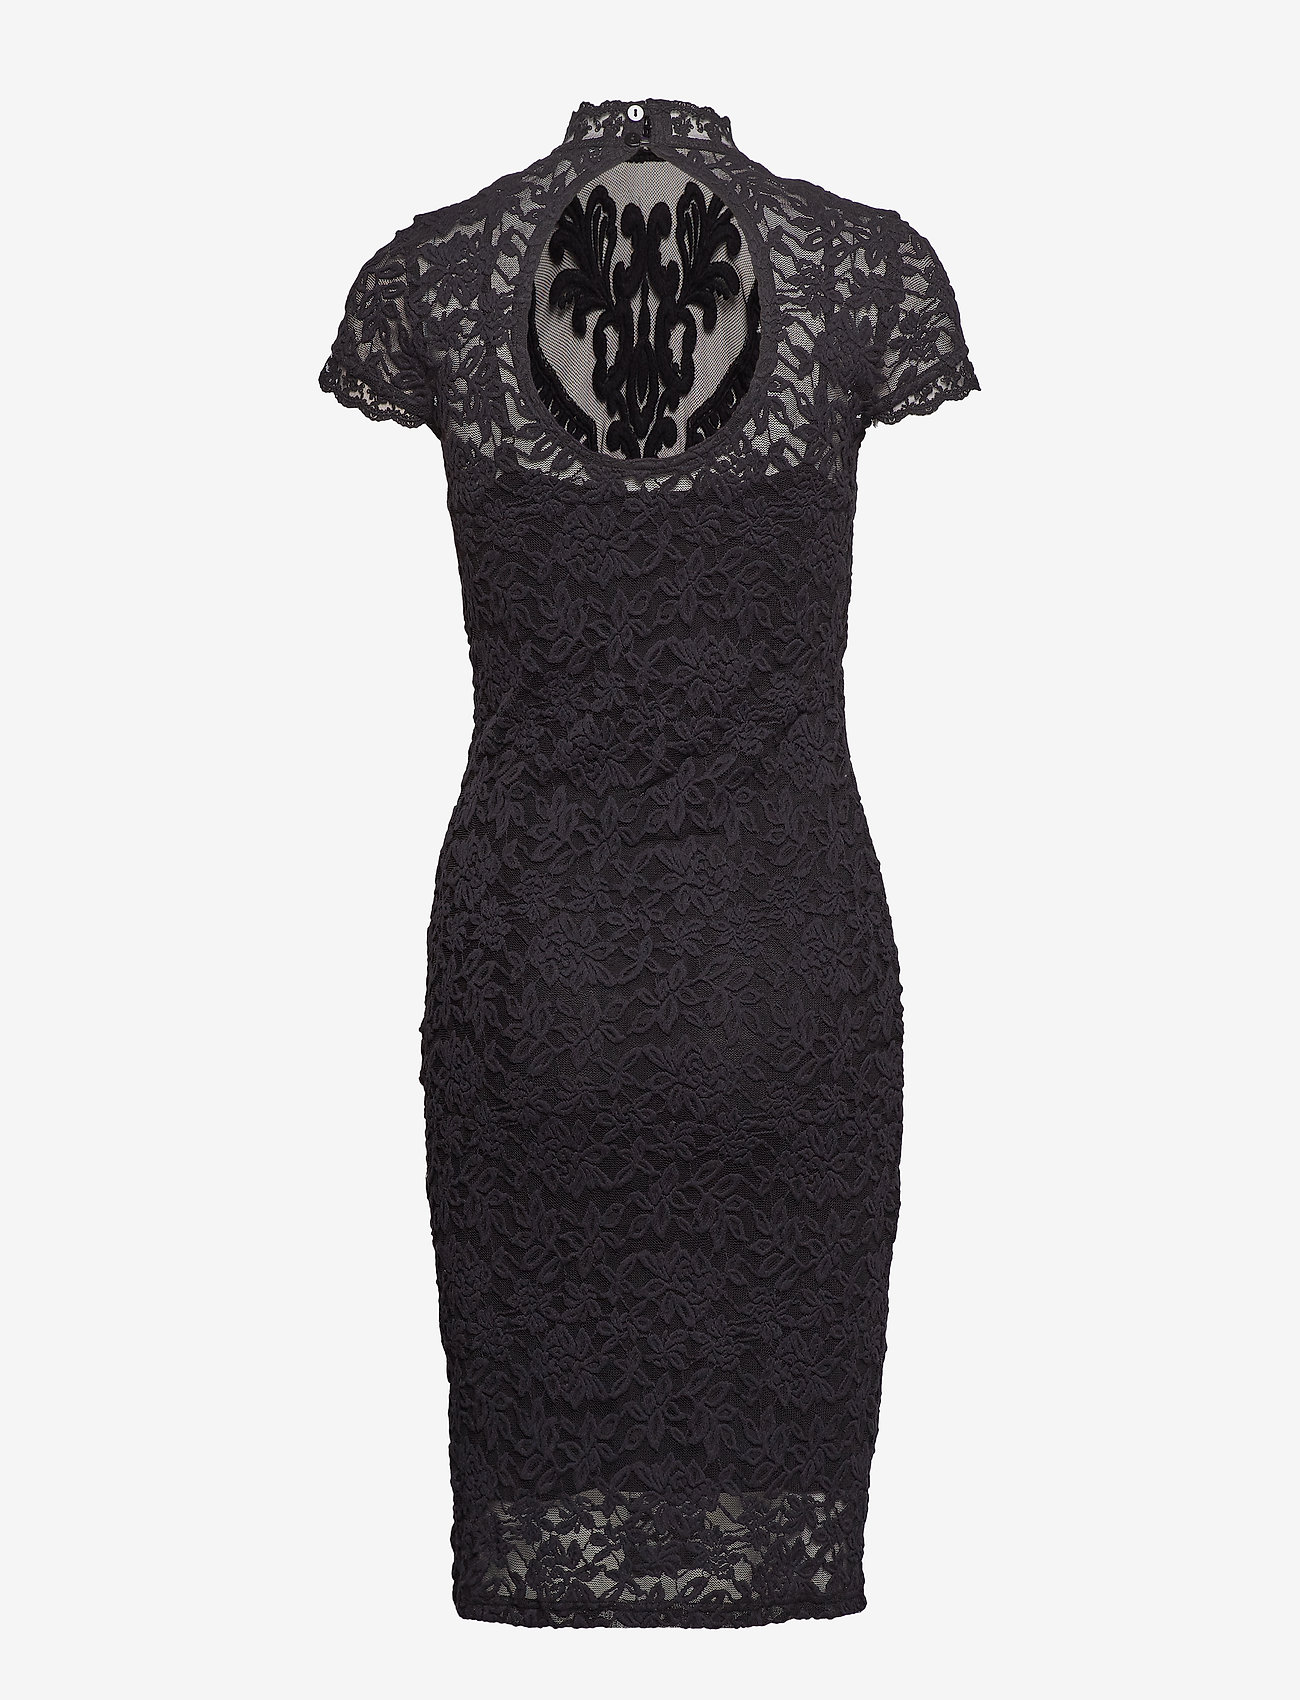 Rosemunde - Dress - bodycon dresses - black - 1